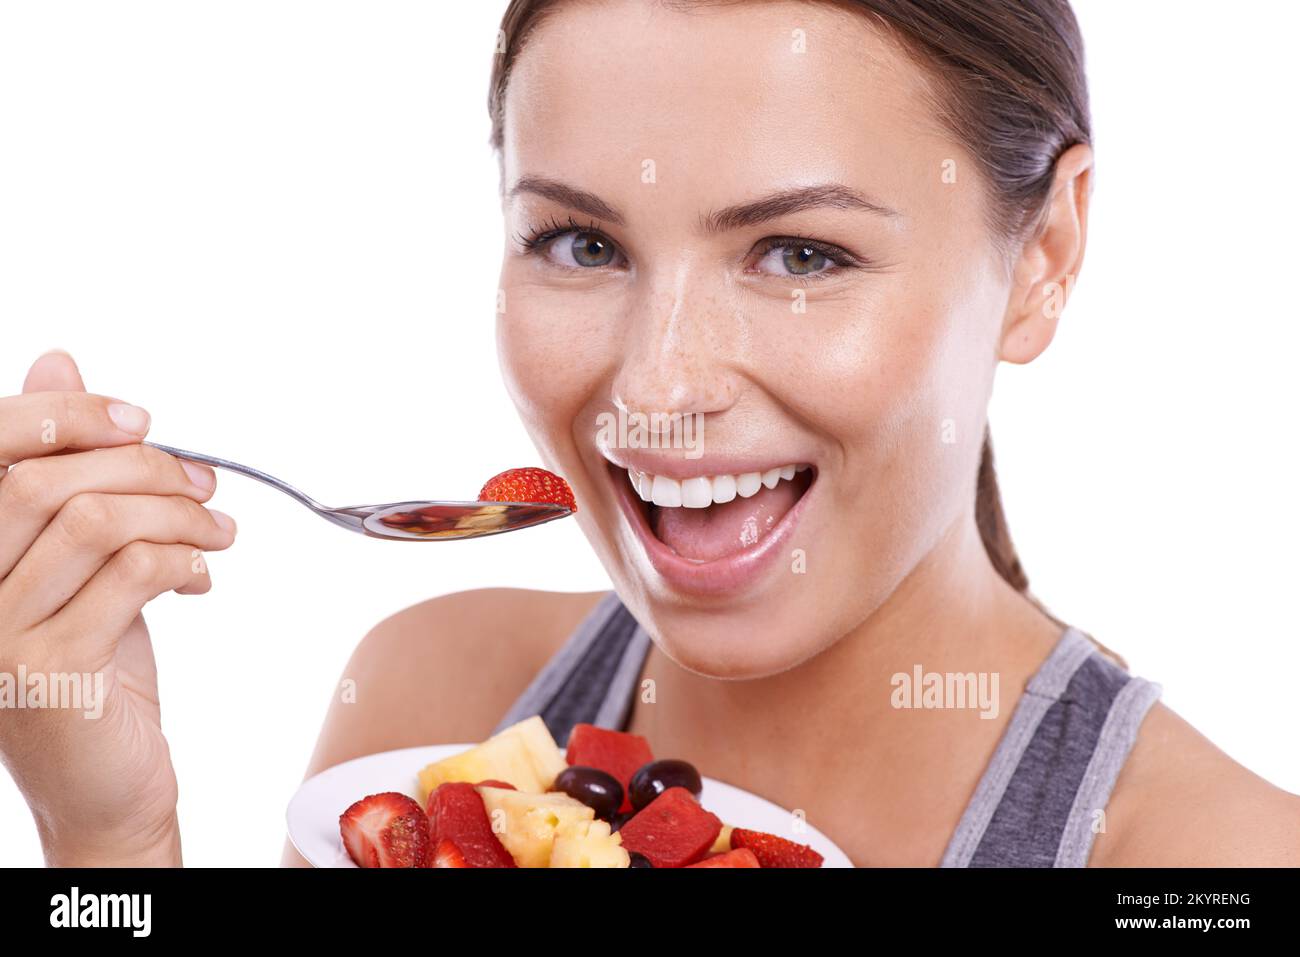 Ama vivere in modo sano. Ritratto di una giovane donna attraente che mangia una ciotola di Macedonia di frutta. Foto Stock